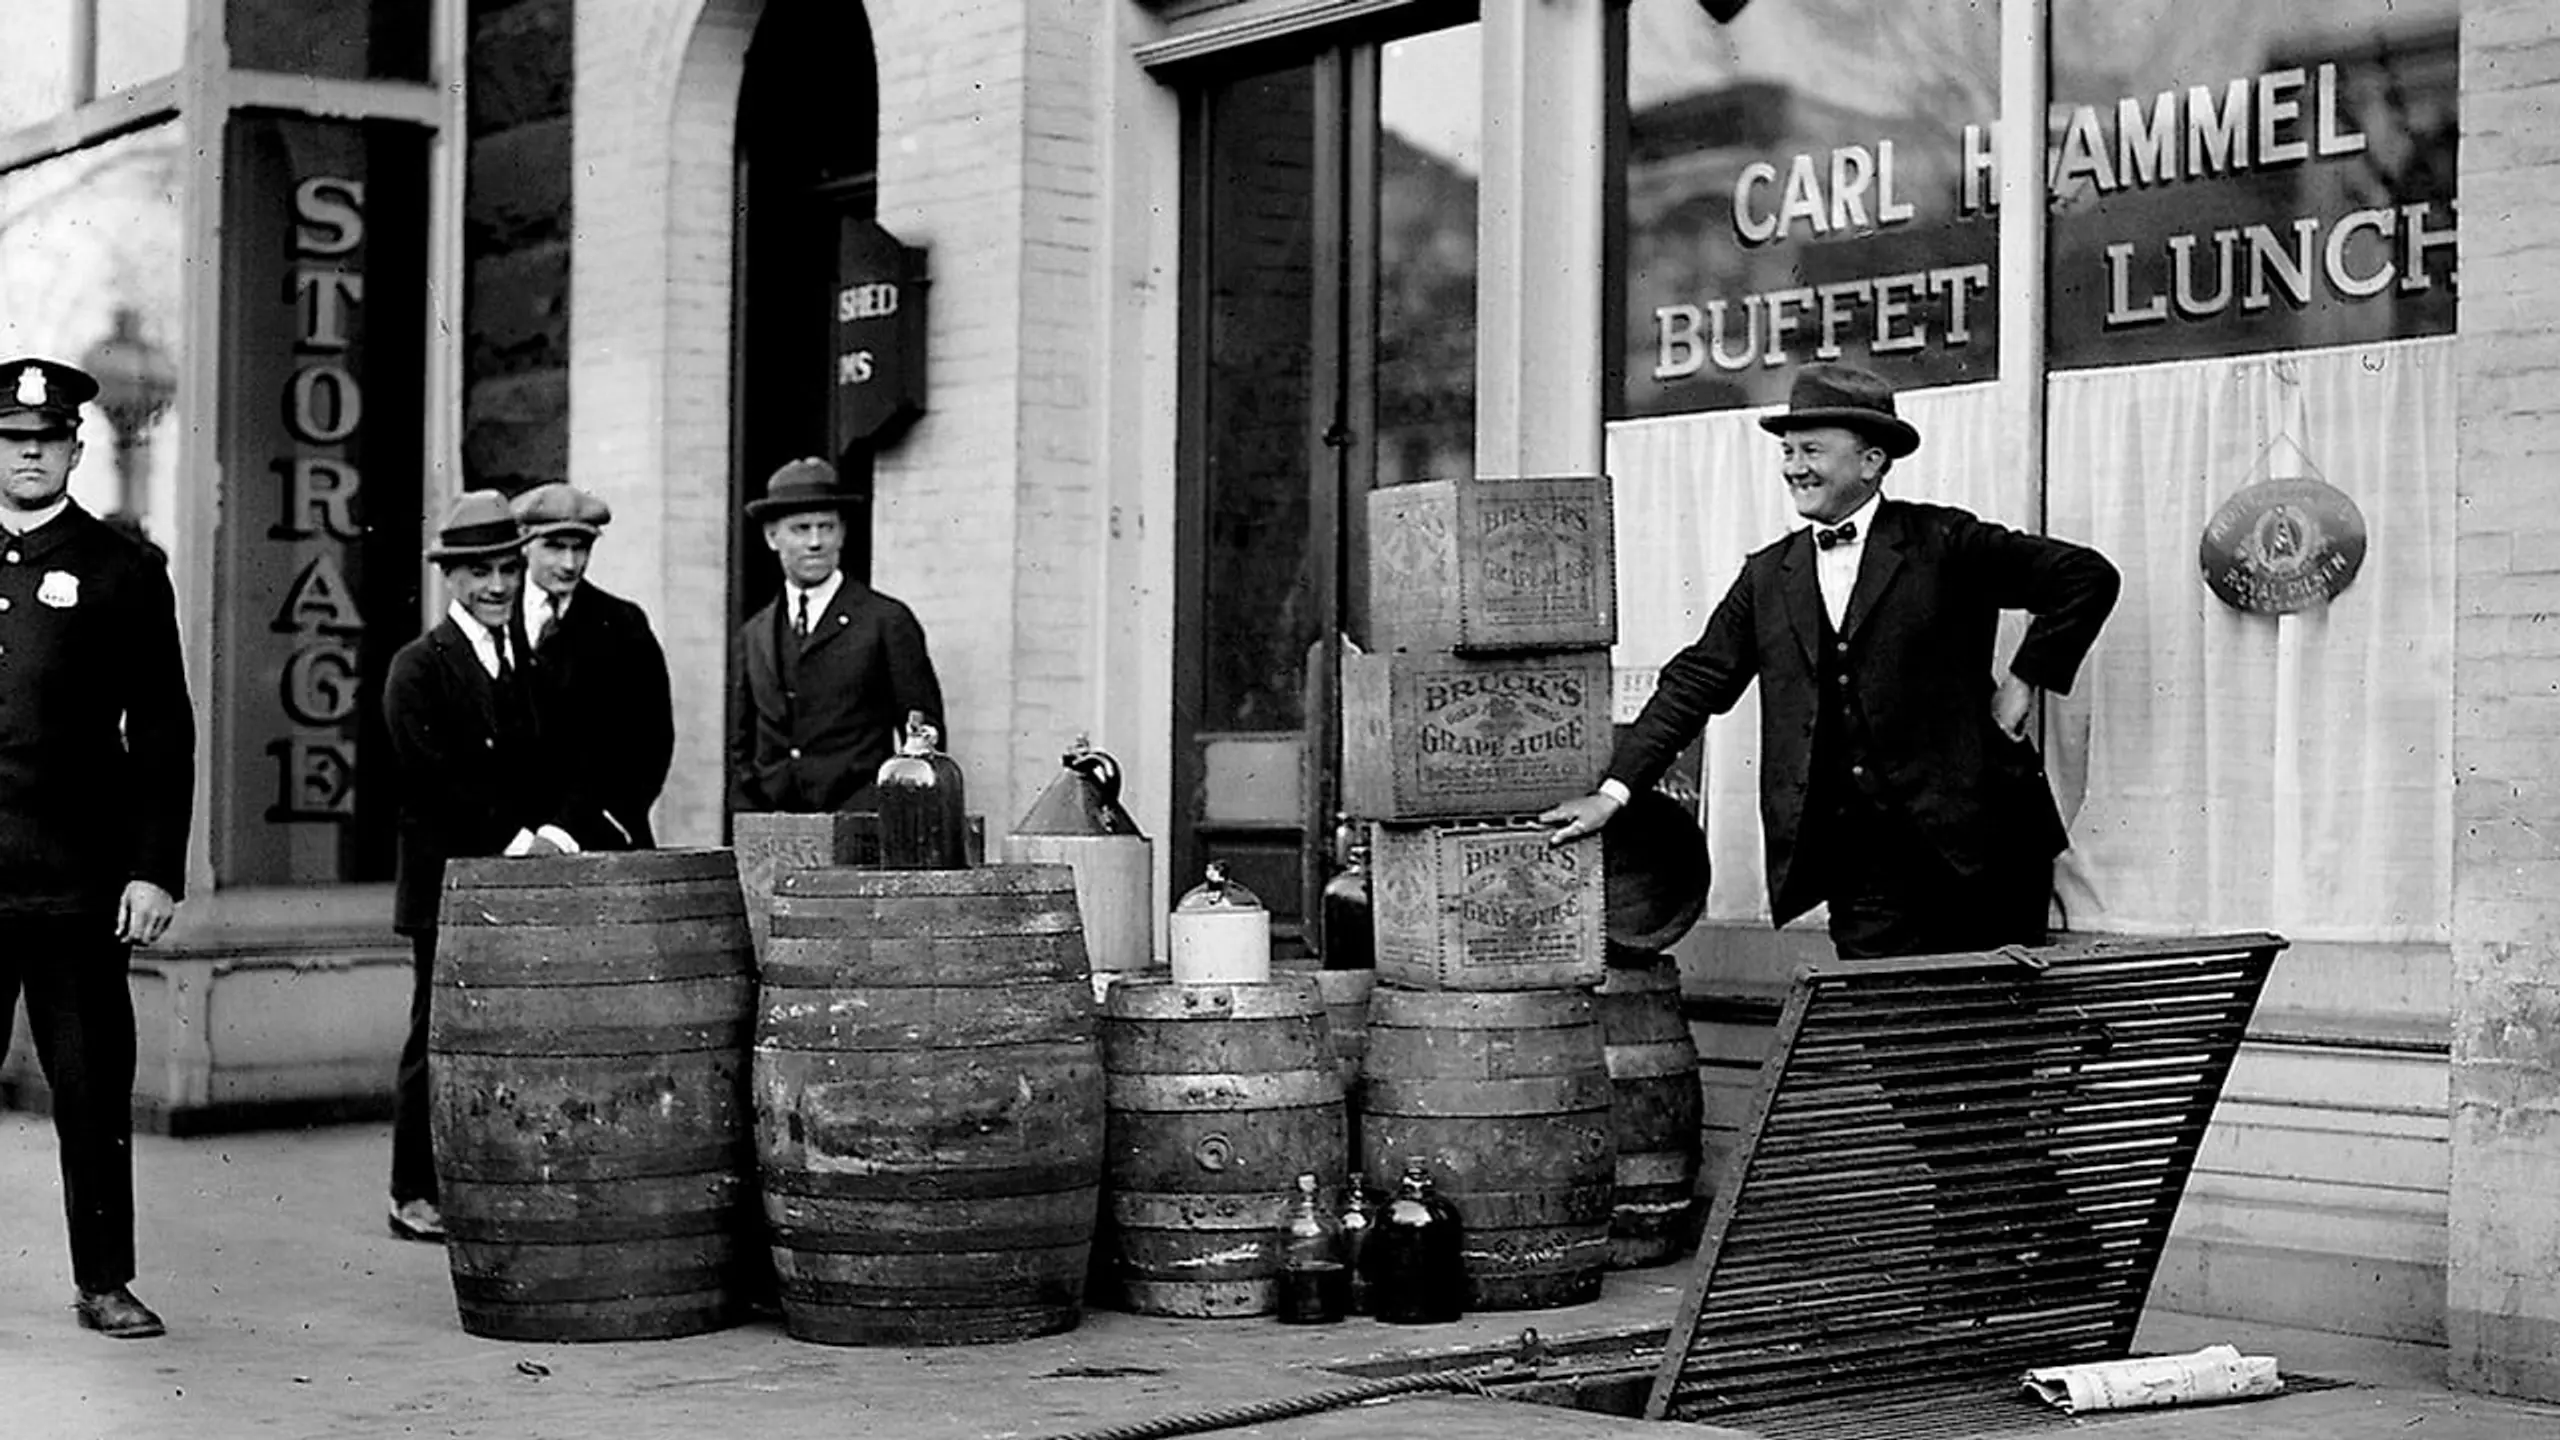 Prohibition - Eine amerikanische Erfahrung